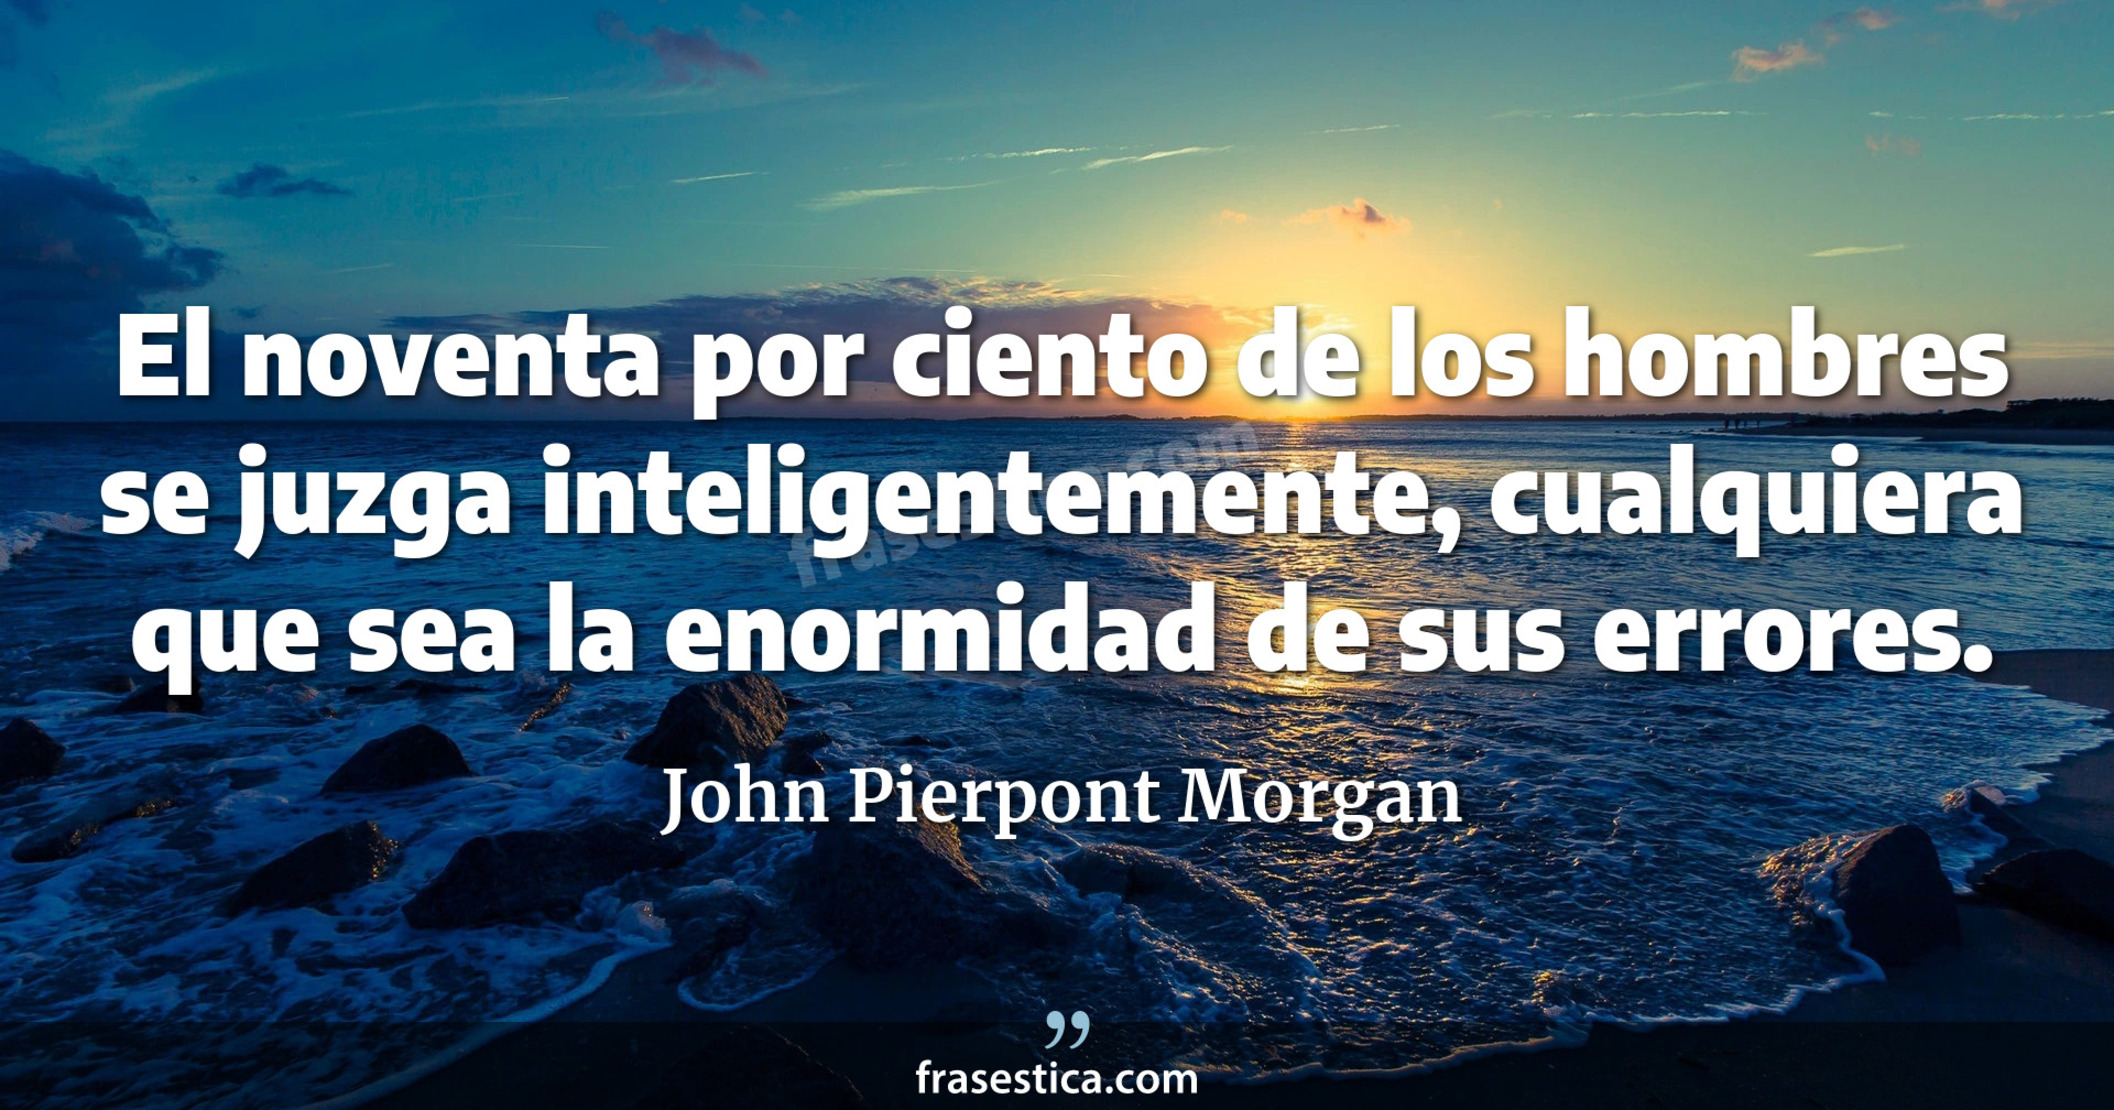 El noventa por ciento de los hombres se juzga inteligentemente, cualquiera que sea la enormidad de sus errores. - John Pierpont Morgan